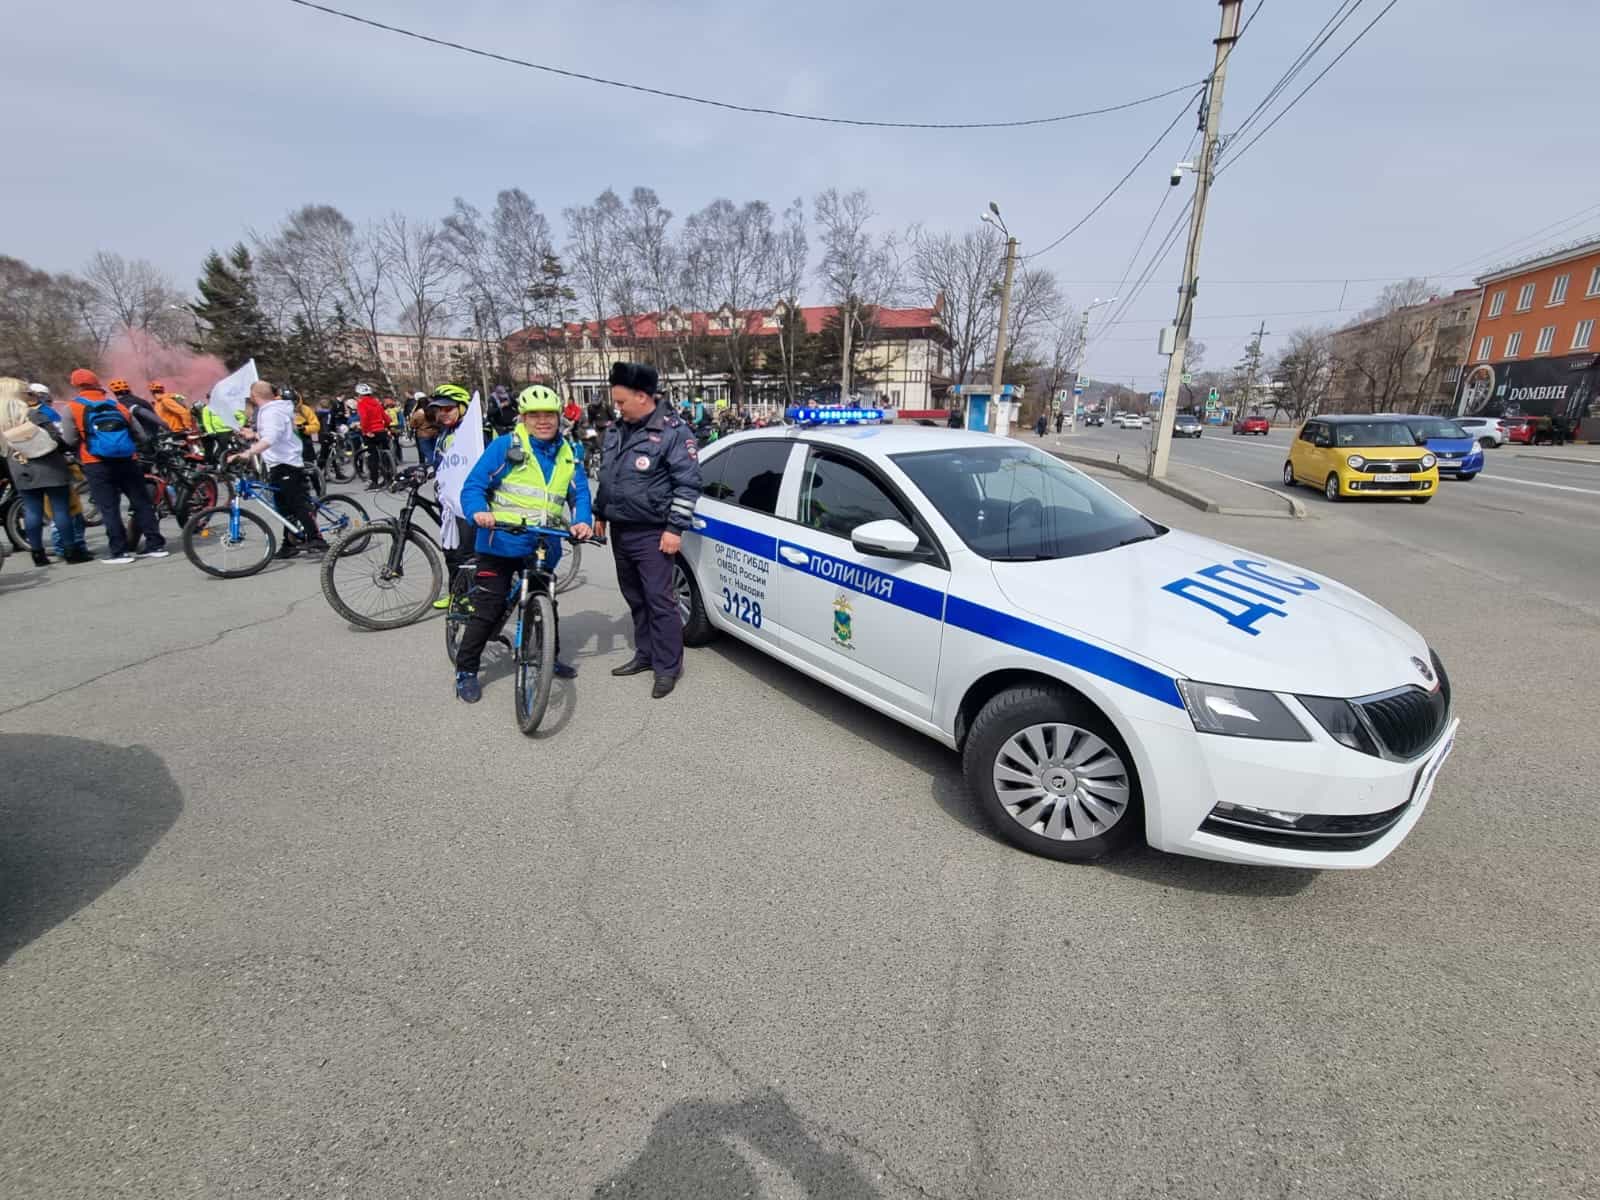 Полицейские Находки напоминают - скутер, мопед, мотоцикл, велосипед, моноколесо - опасное транспортное средство